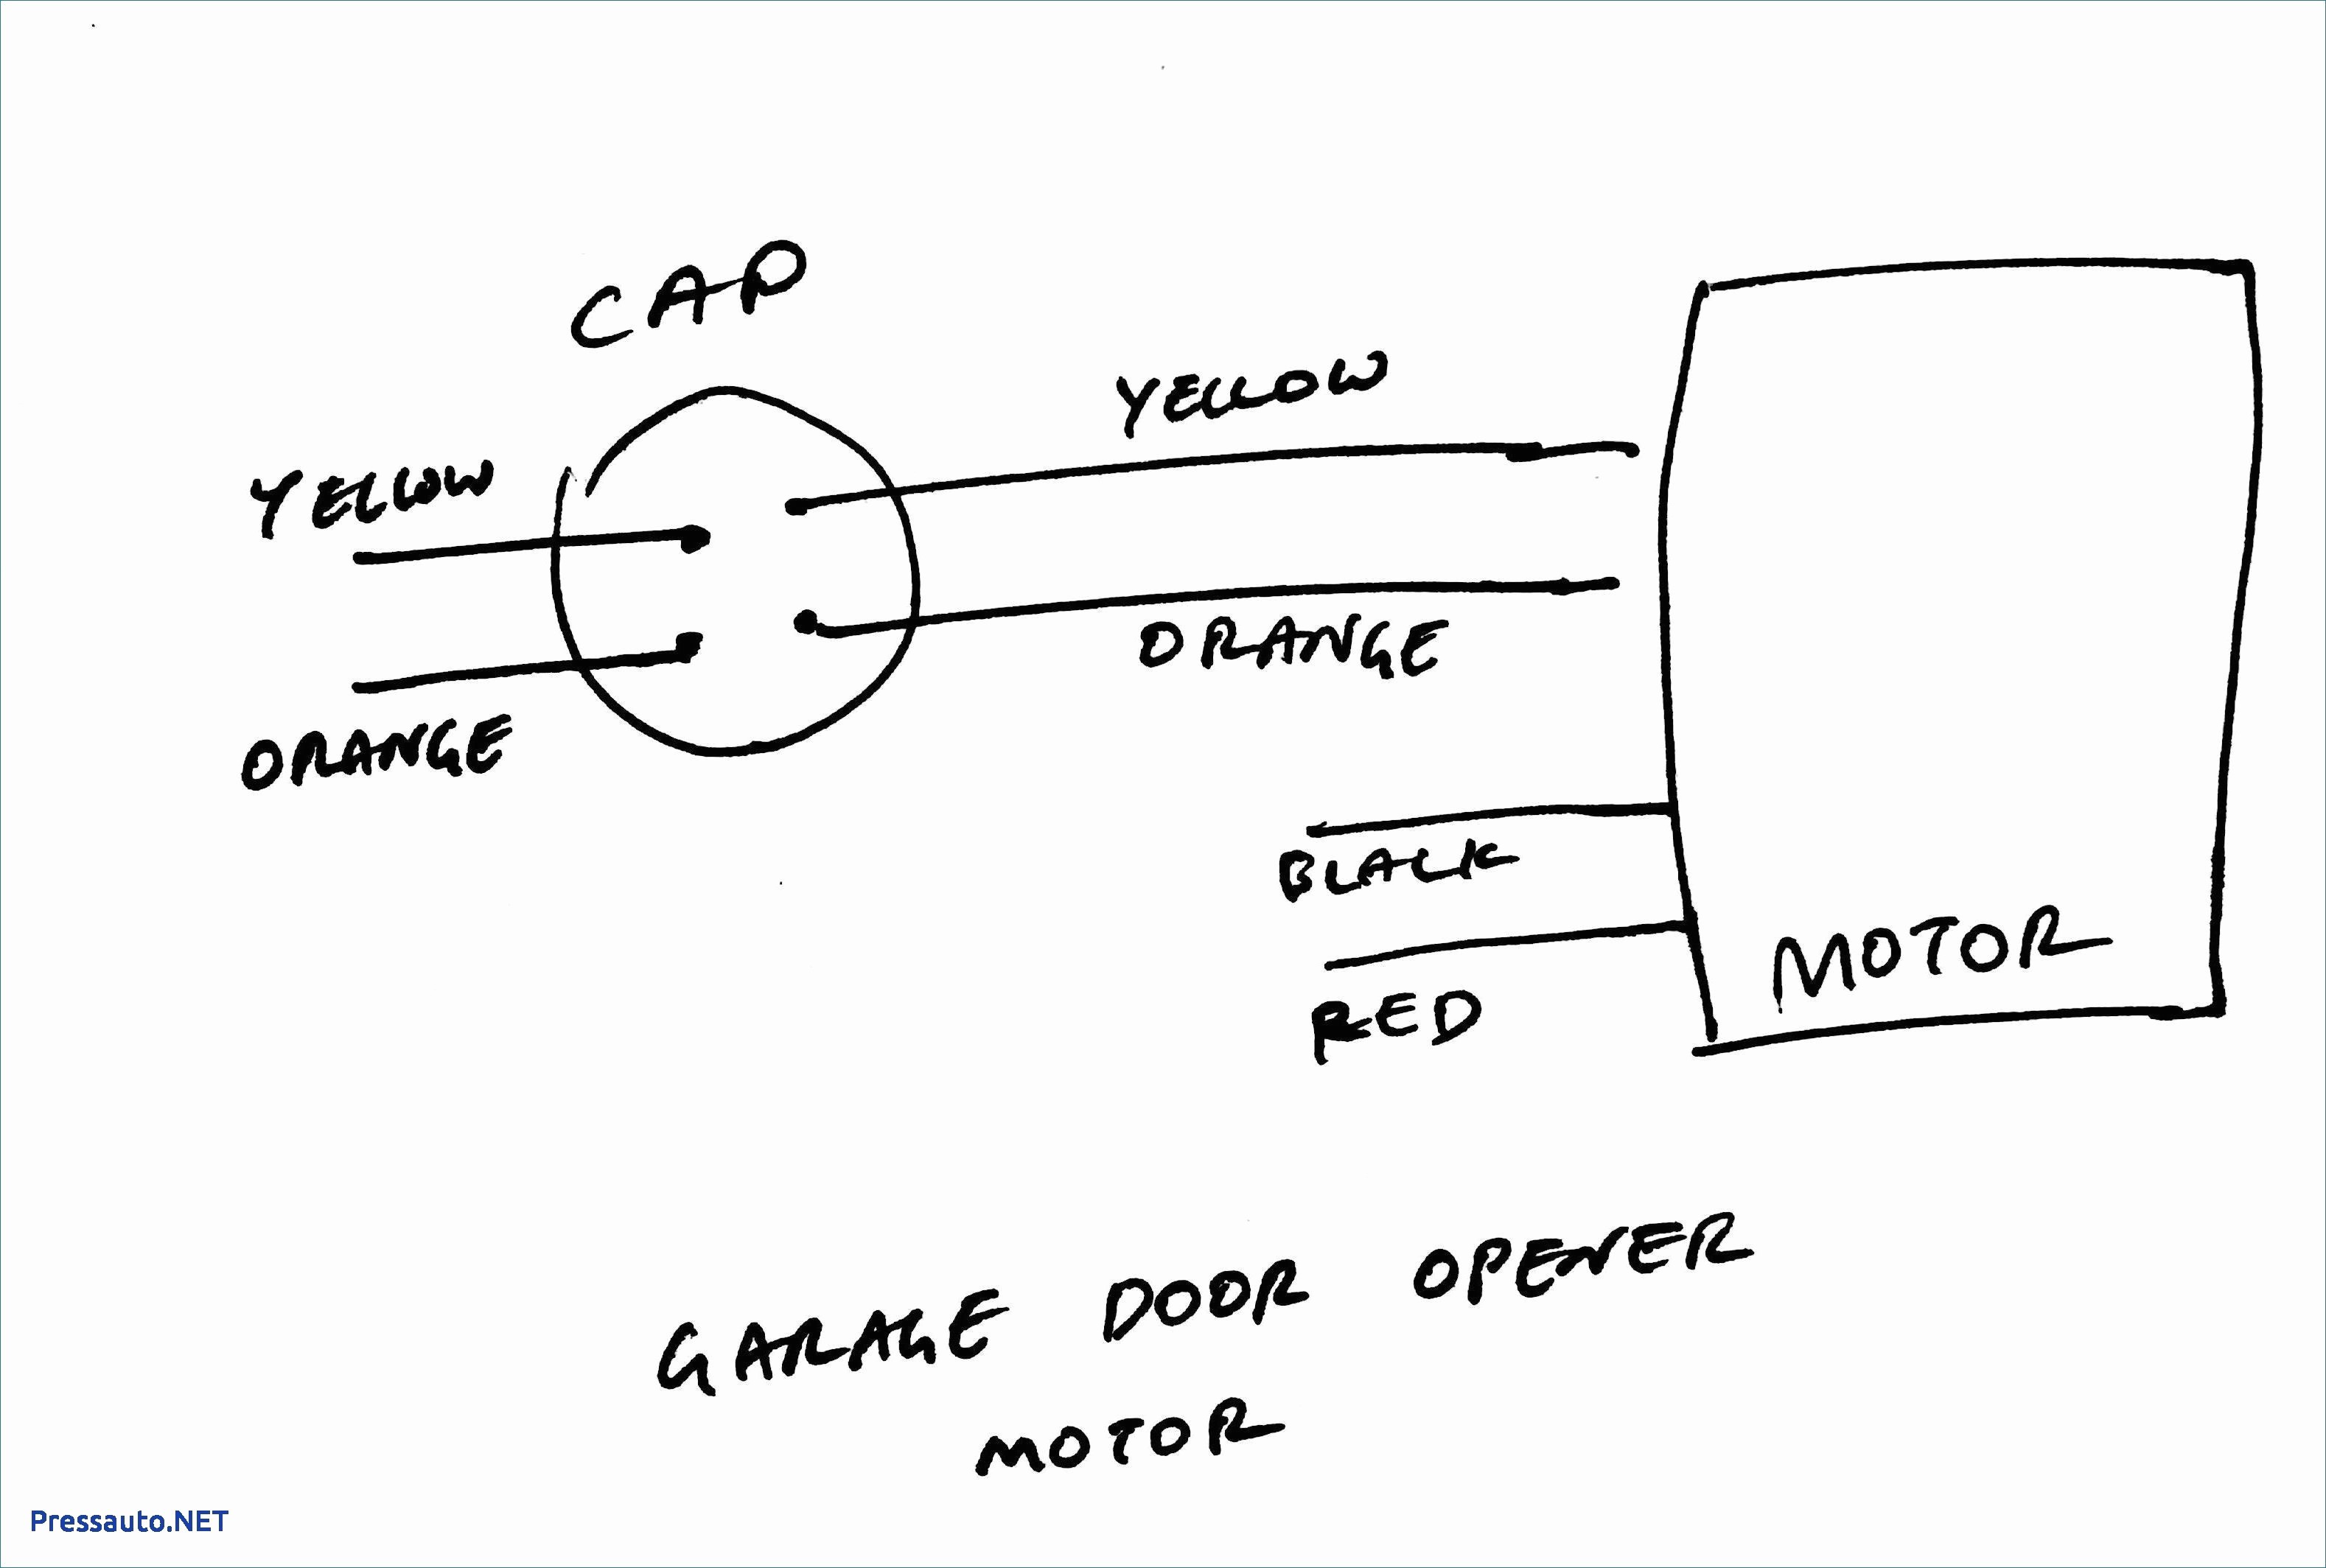 3 Wire Condenser Fan Motor Wiring Diagram